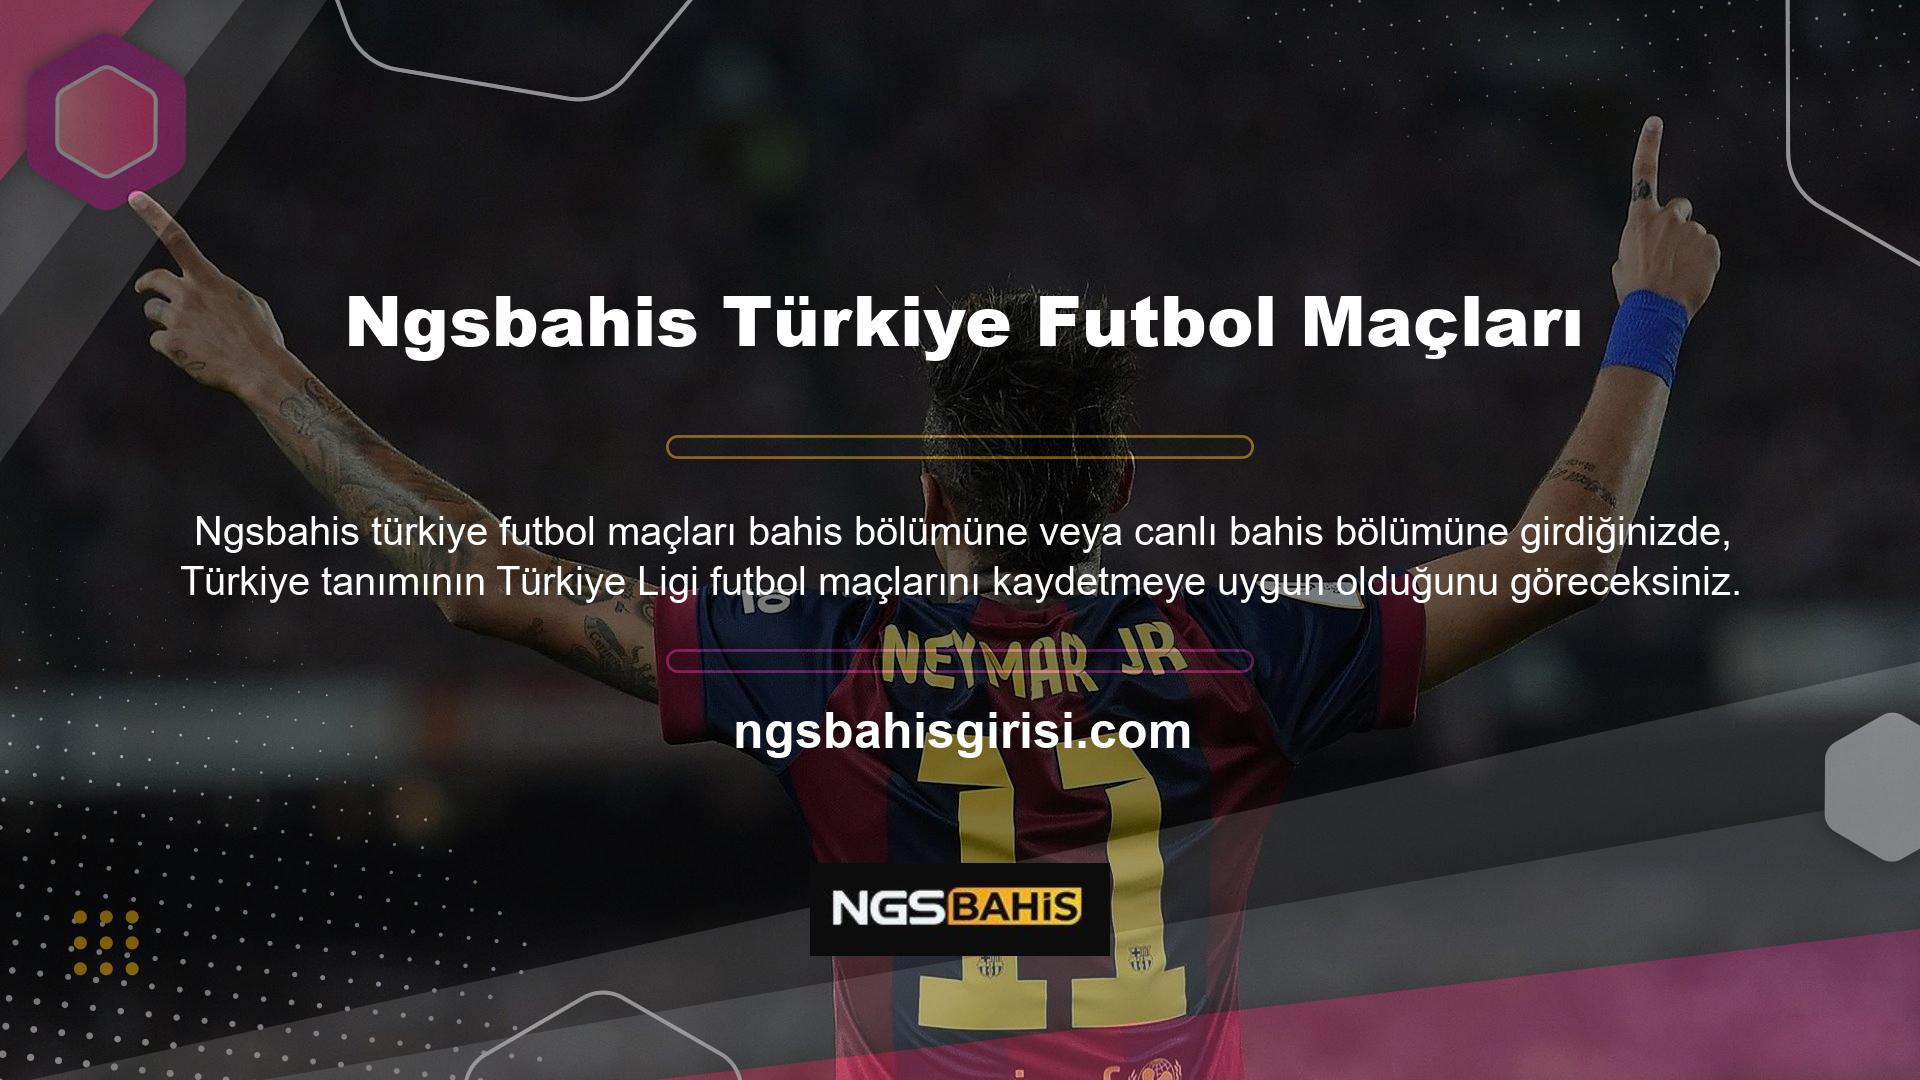 Türkiye Ligi Bilgi Ortamı, Fenerbahçe, Galatasaray, Malatya, Konya, Beşiktaş ve Trabzonspor dahil olmak üzere Türkiye Ngsbahis Ligi'nin tüm futbol takımlarının maçlarına ev sahipliği yapmaktadır